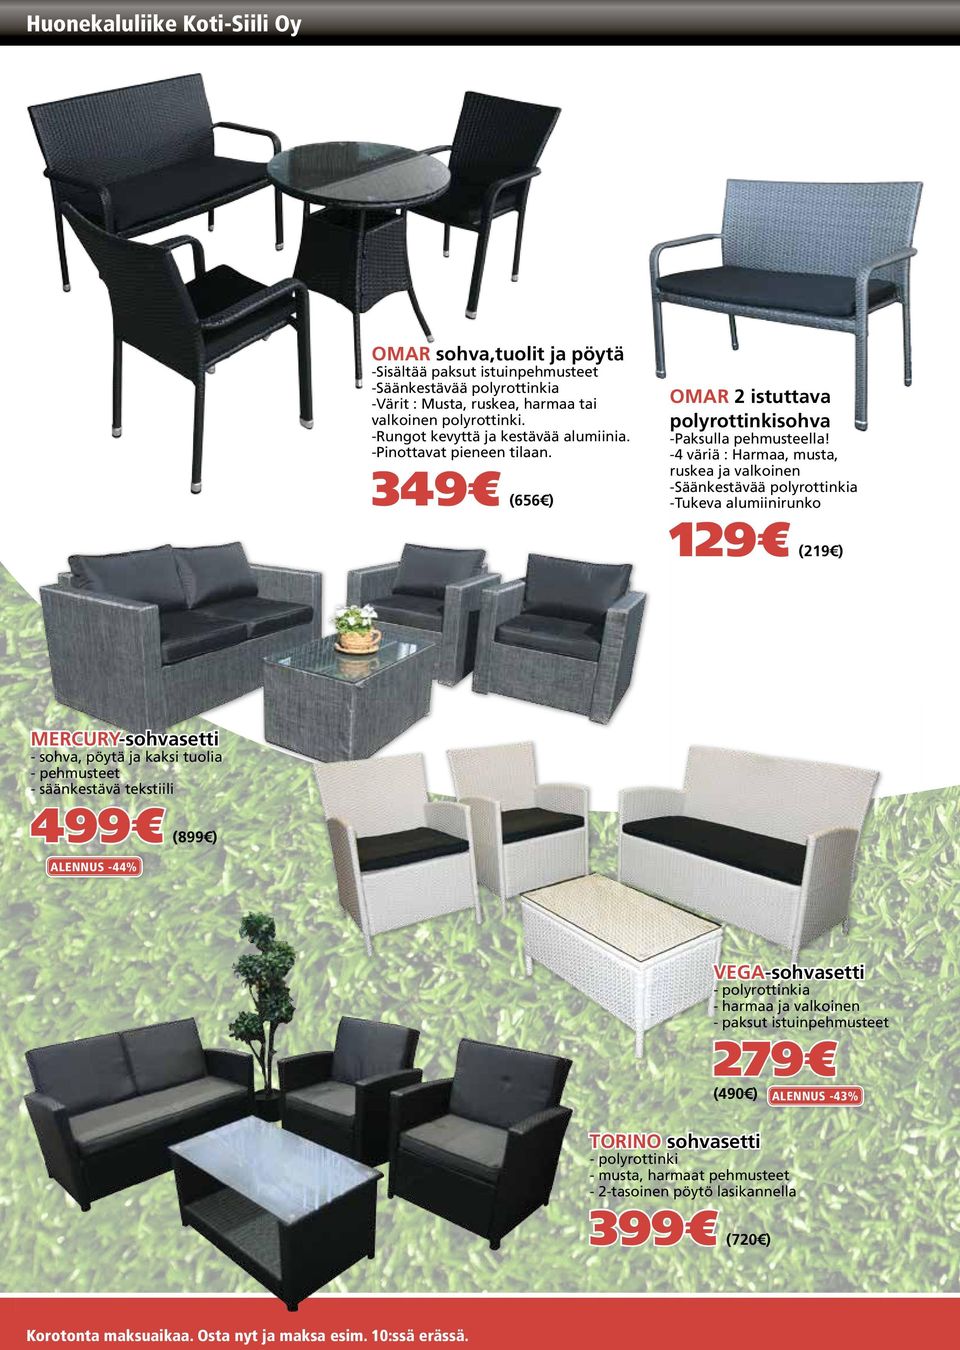 -4 väriä : Harmaa, musta, ruskea ja valkoinen -Säänkestävää polyrottinkia -Tukeva alumiinirunko 129 (219 ) MERCURY-sohvasetti - sohva, pöytä ja kaksi tuolia - pehmusteet - säänkestävä tekstiili 499